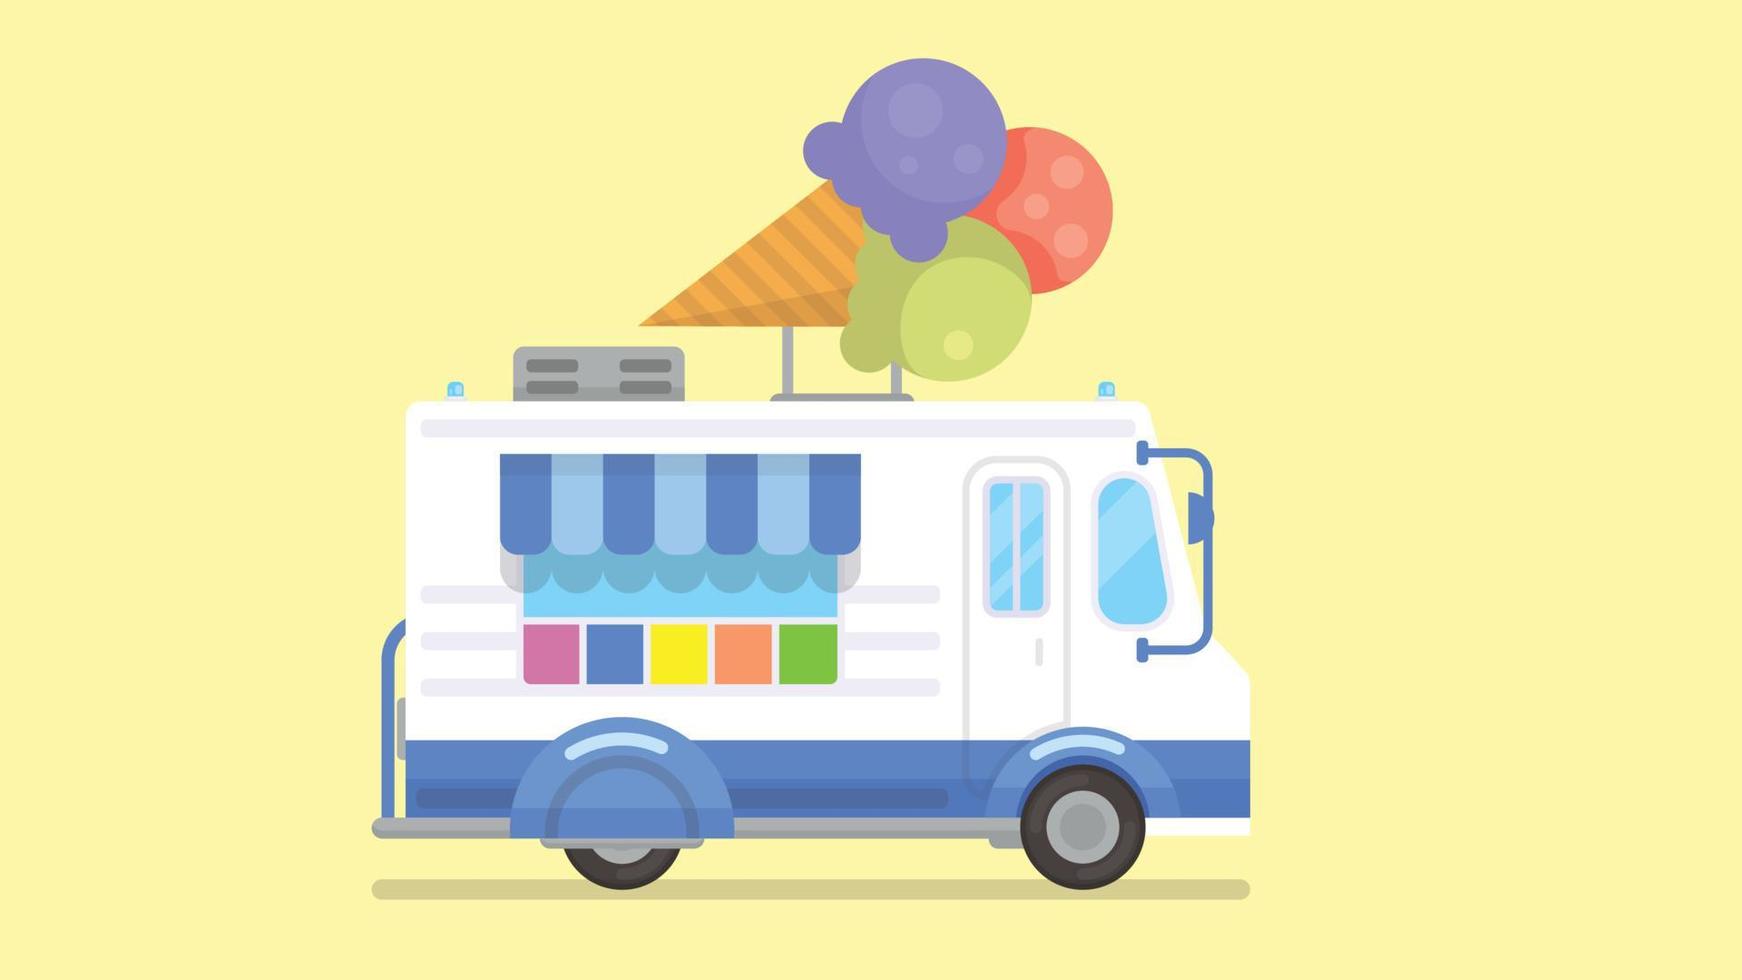 camion dei gelati colorato in stile piatto. negozio mobile, furgone gelati. gelato street food caravan trailer, illustrazione vettoriale. vettore